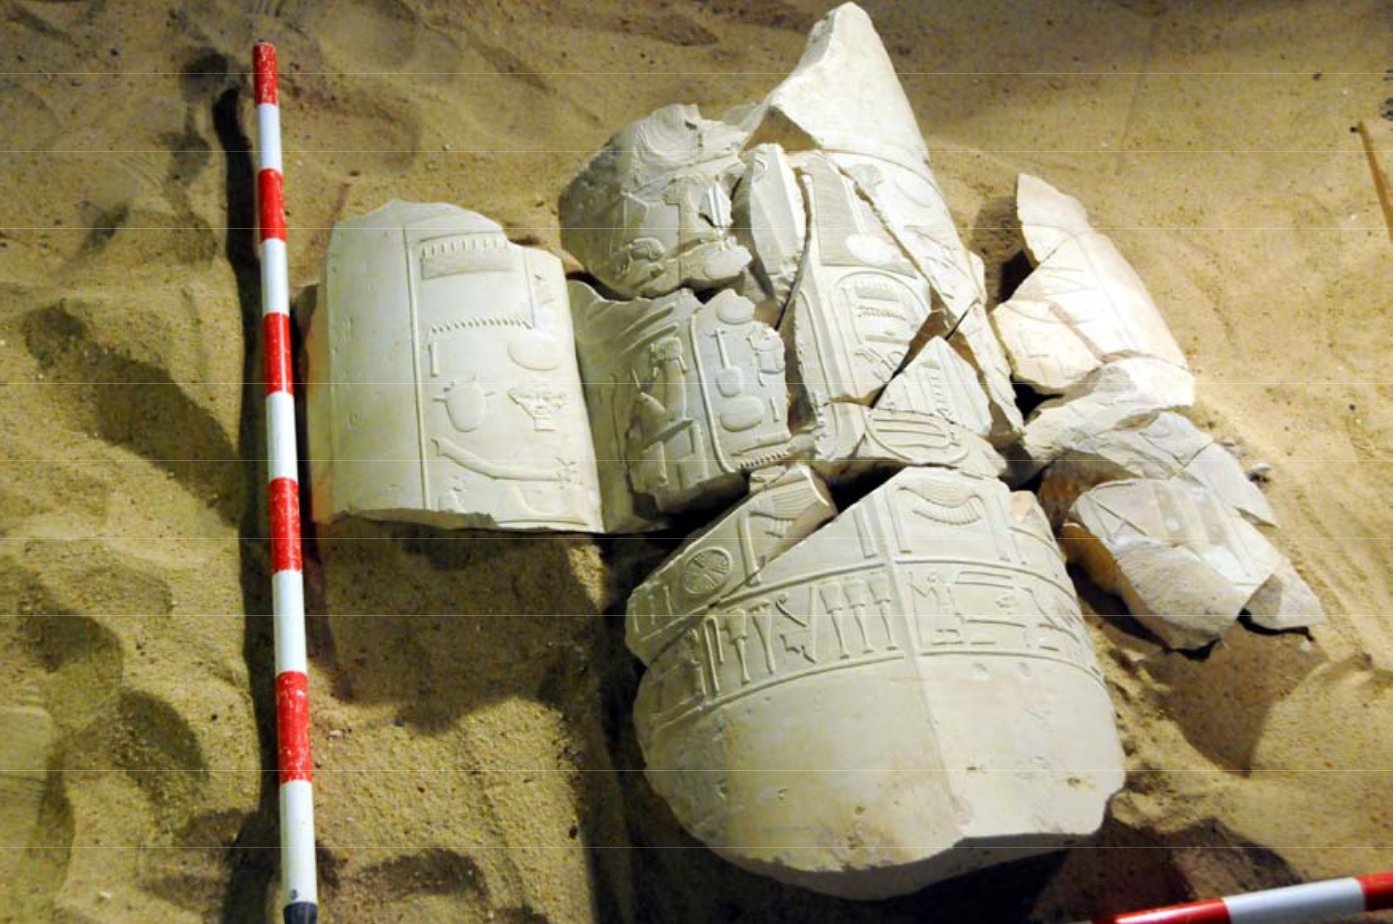 Le nom d'Amenhotep IV, qui deviendra Akhenaton, figure dans ce tombeau découvert à Louxor, aux côtés du cartouche royal de son père, Amenhotep III. Pour l'équipe égypto-espagnole qui a fait cette découverte, c'est la preuve que le père et le fils ont régné ensemble un certain temps. © MSA (Ministry of State for Antiquities)